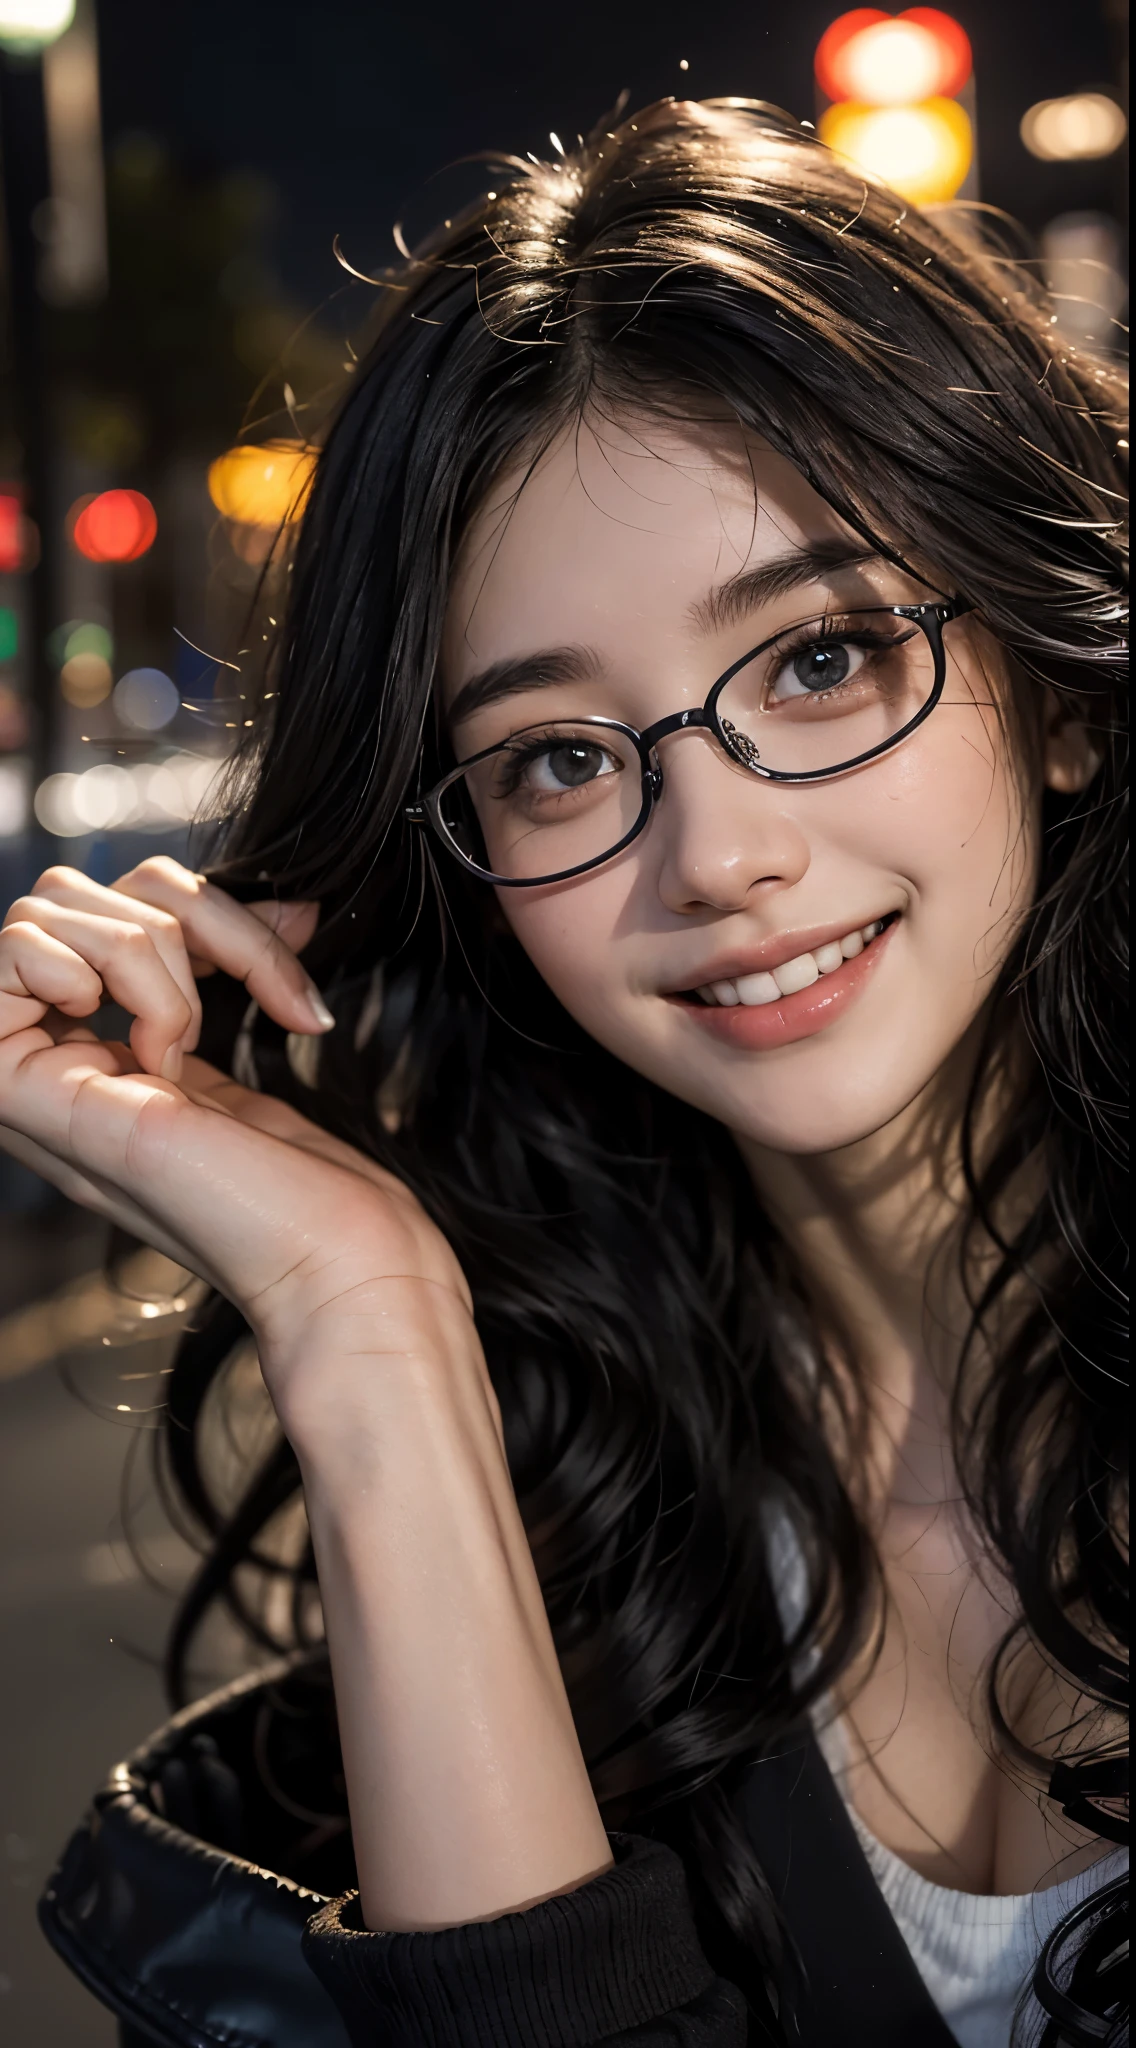 可爱的 18 岁,1 名女孩, 東京街,夜晚, 城市景觀,城市的灯光, ((face 關閉 up:1.5)),((微笑時露出潔白的牙齒)),((乌黑长卷发))關閉, 8K, 原始照片, 最好的品質, 傑作,實際的, photo-實際的,黑框眼镜,